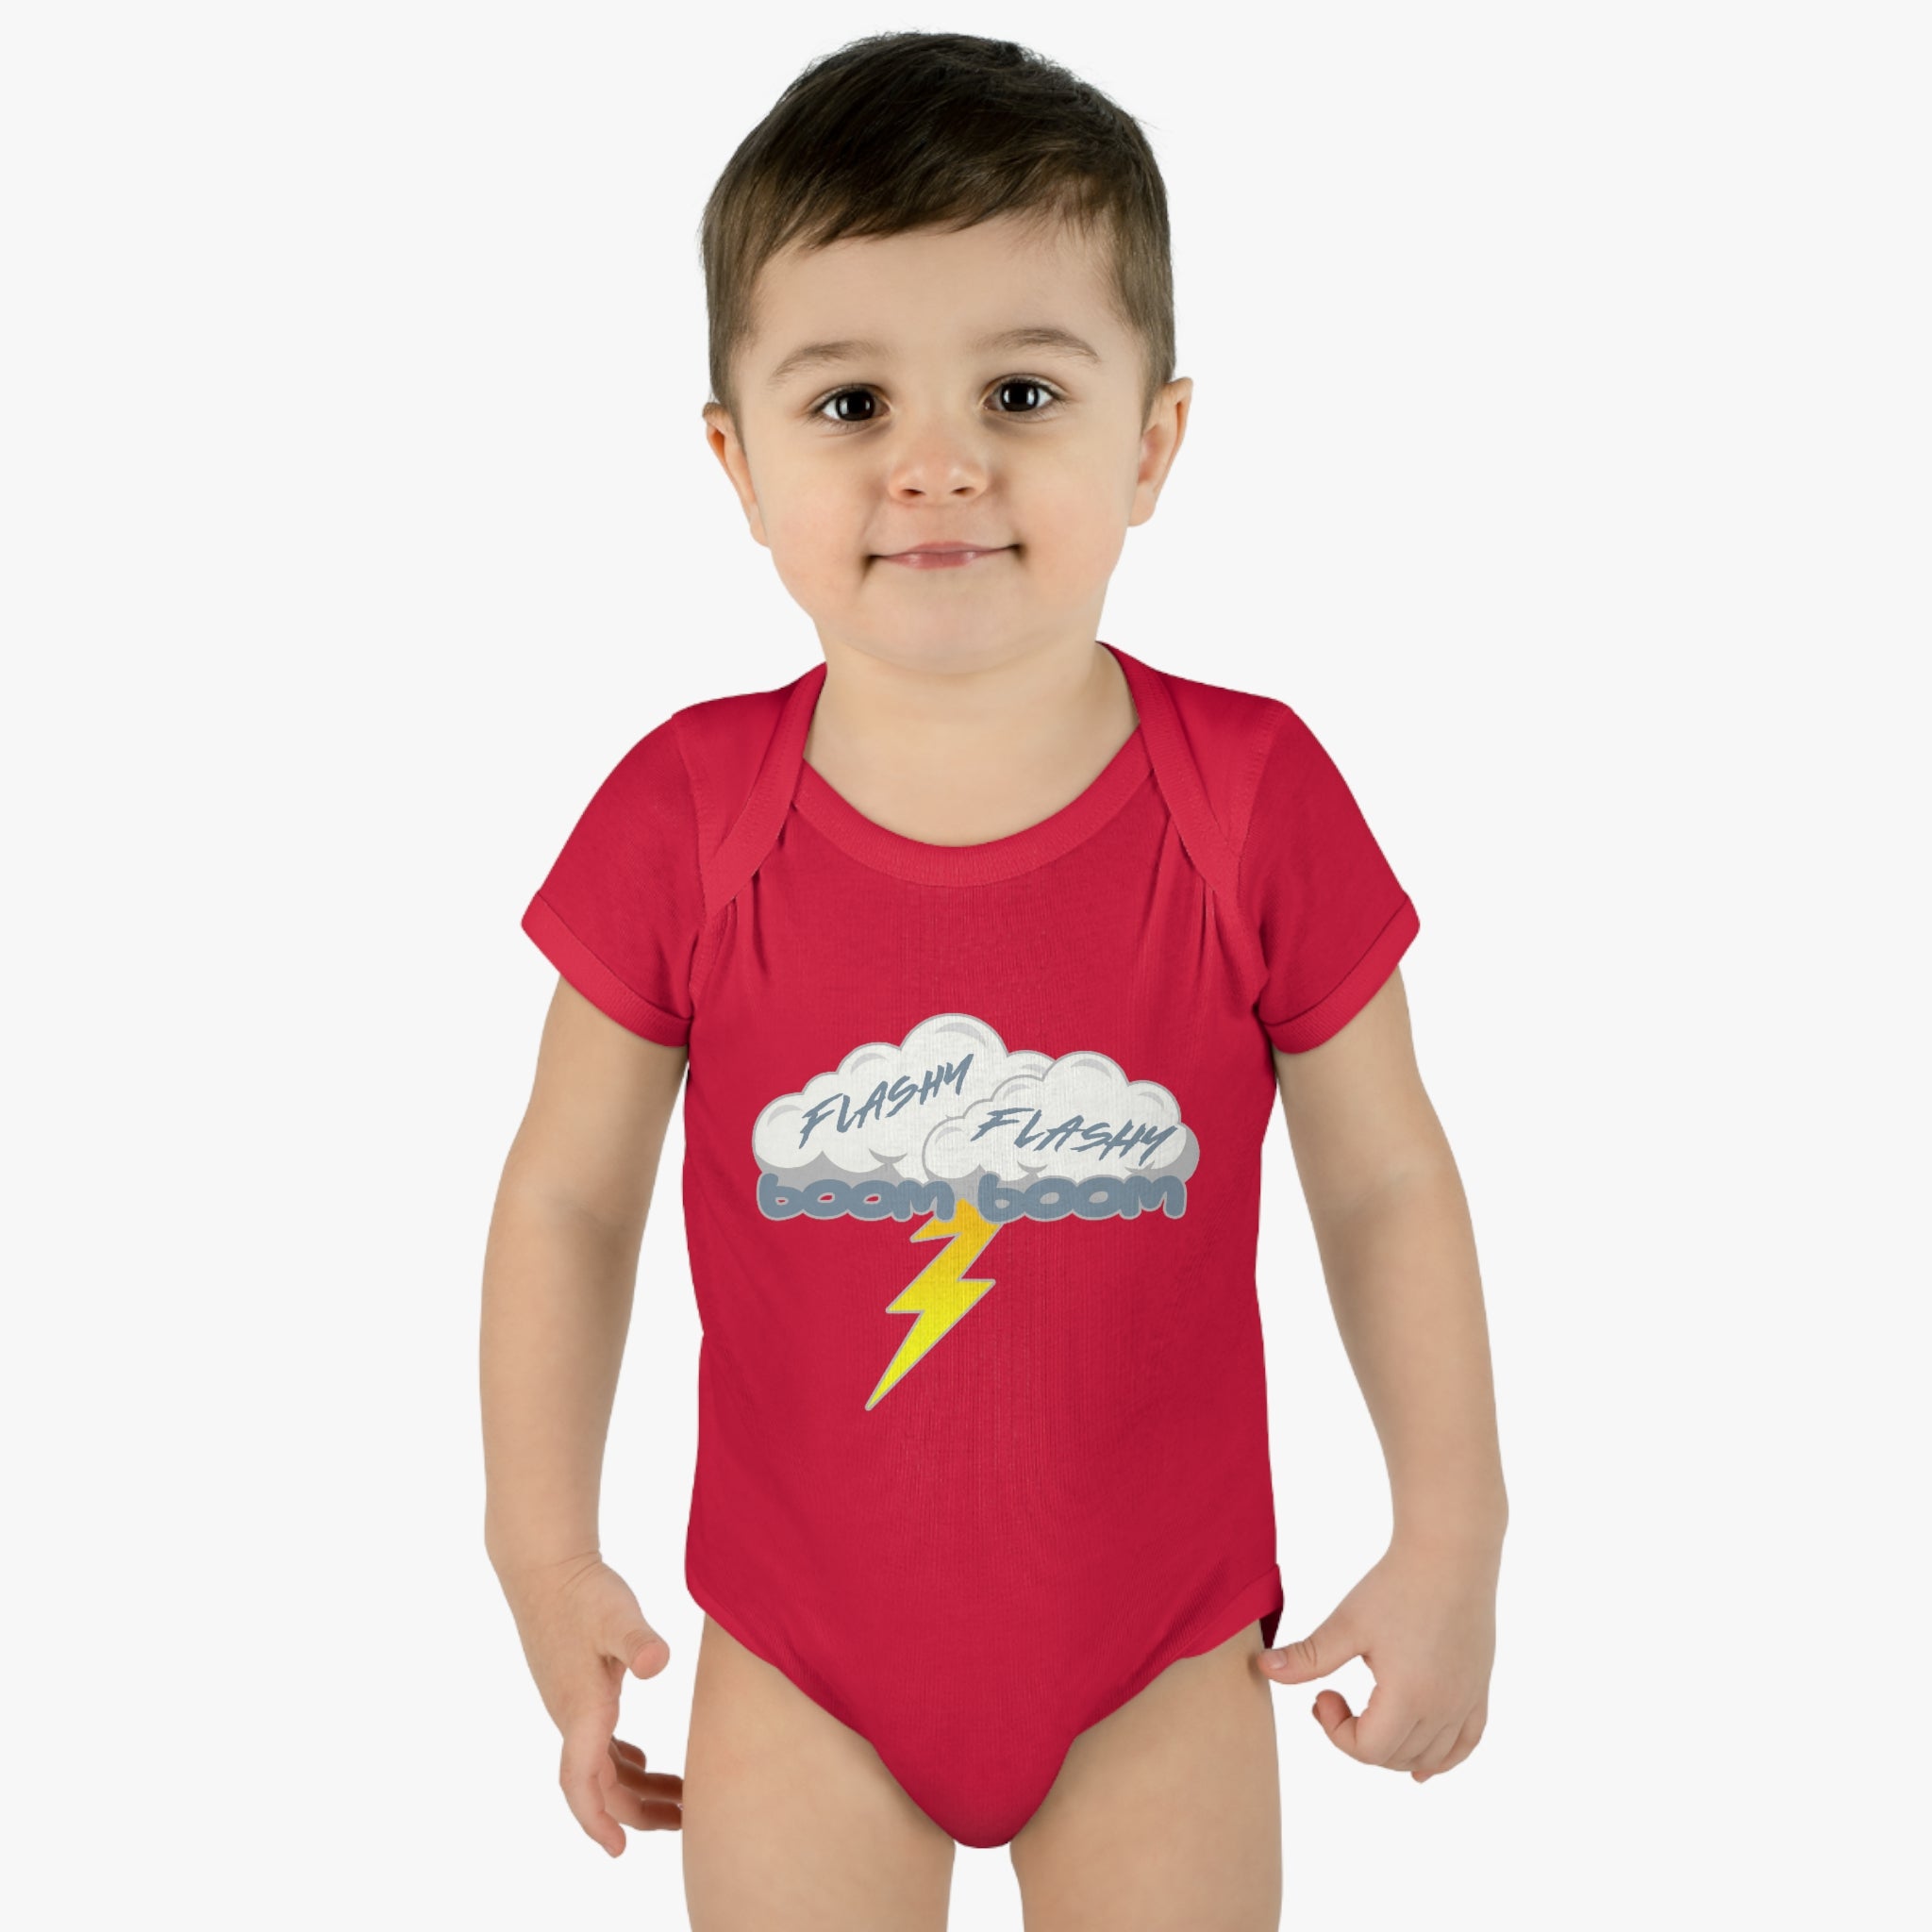 Flashy Flashy Boom Boom Infant Bodysuit 